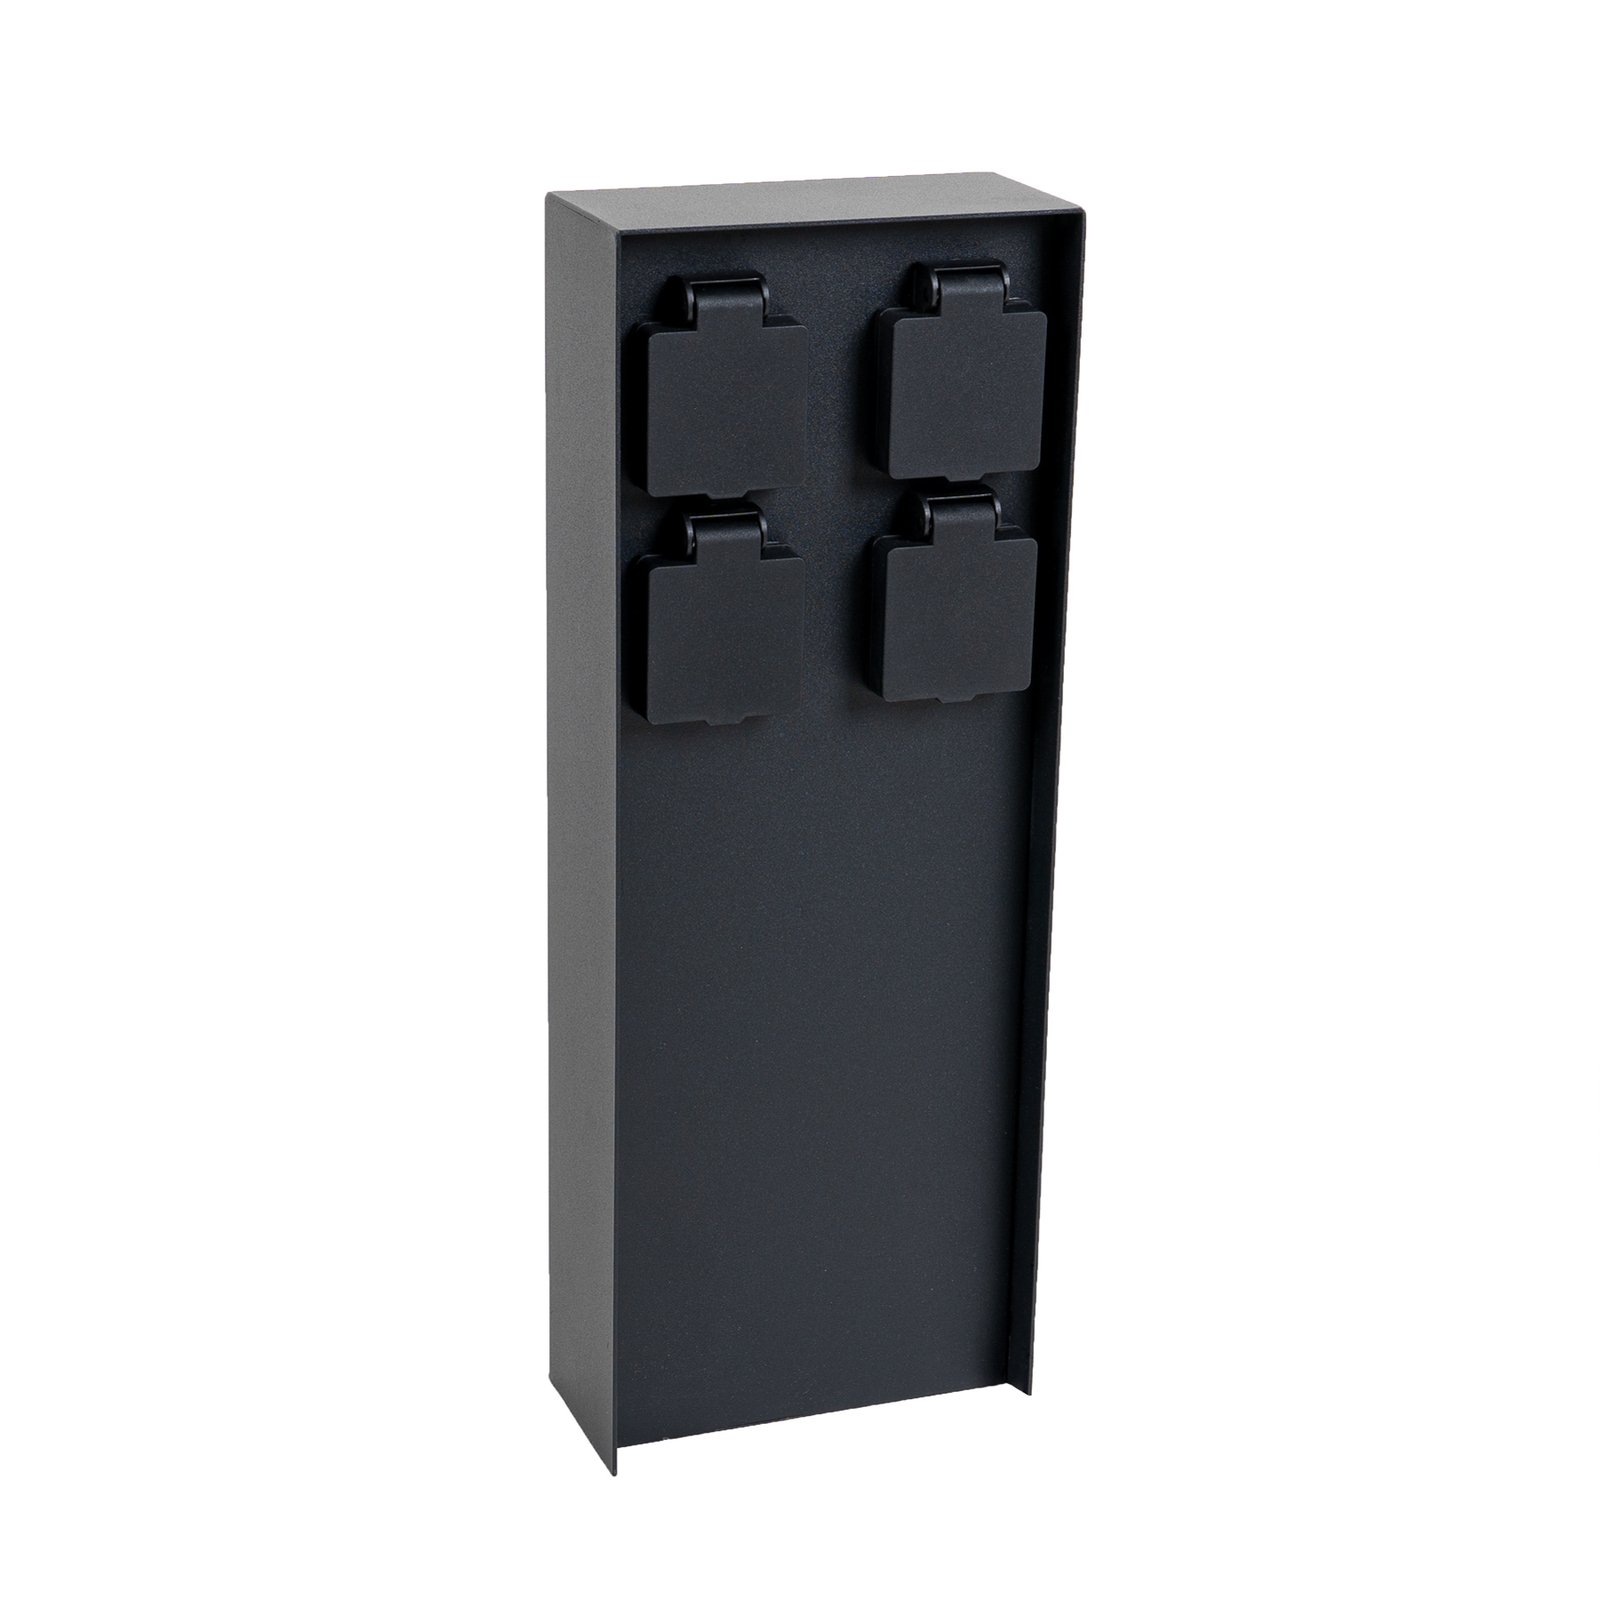 Kolumna energetyczna Prios Foranda, 4 sztuki, czarna, 40 cm